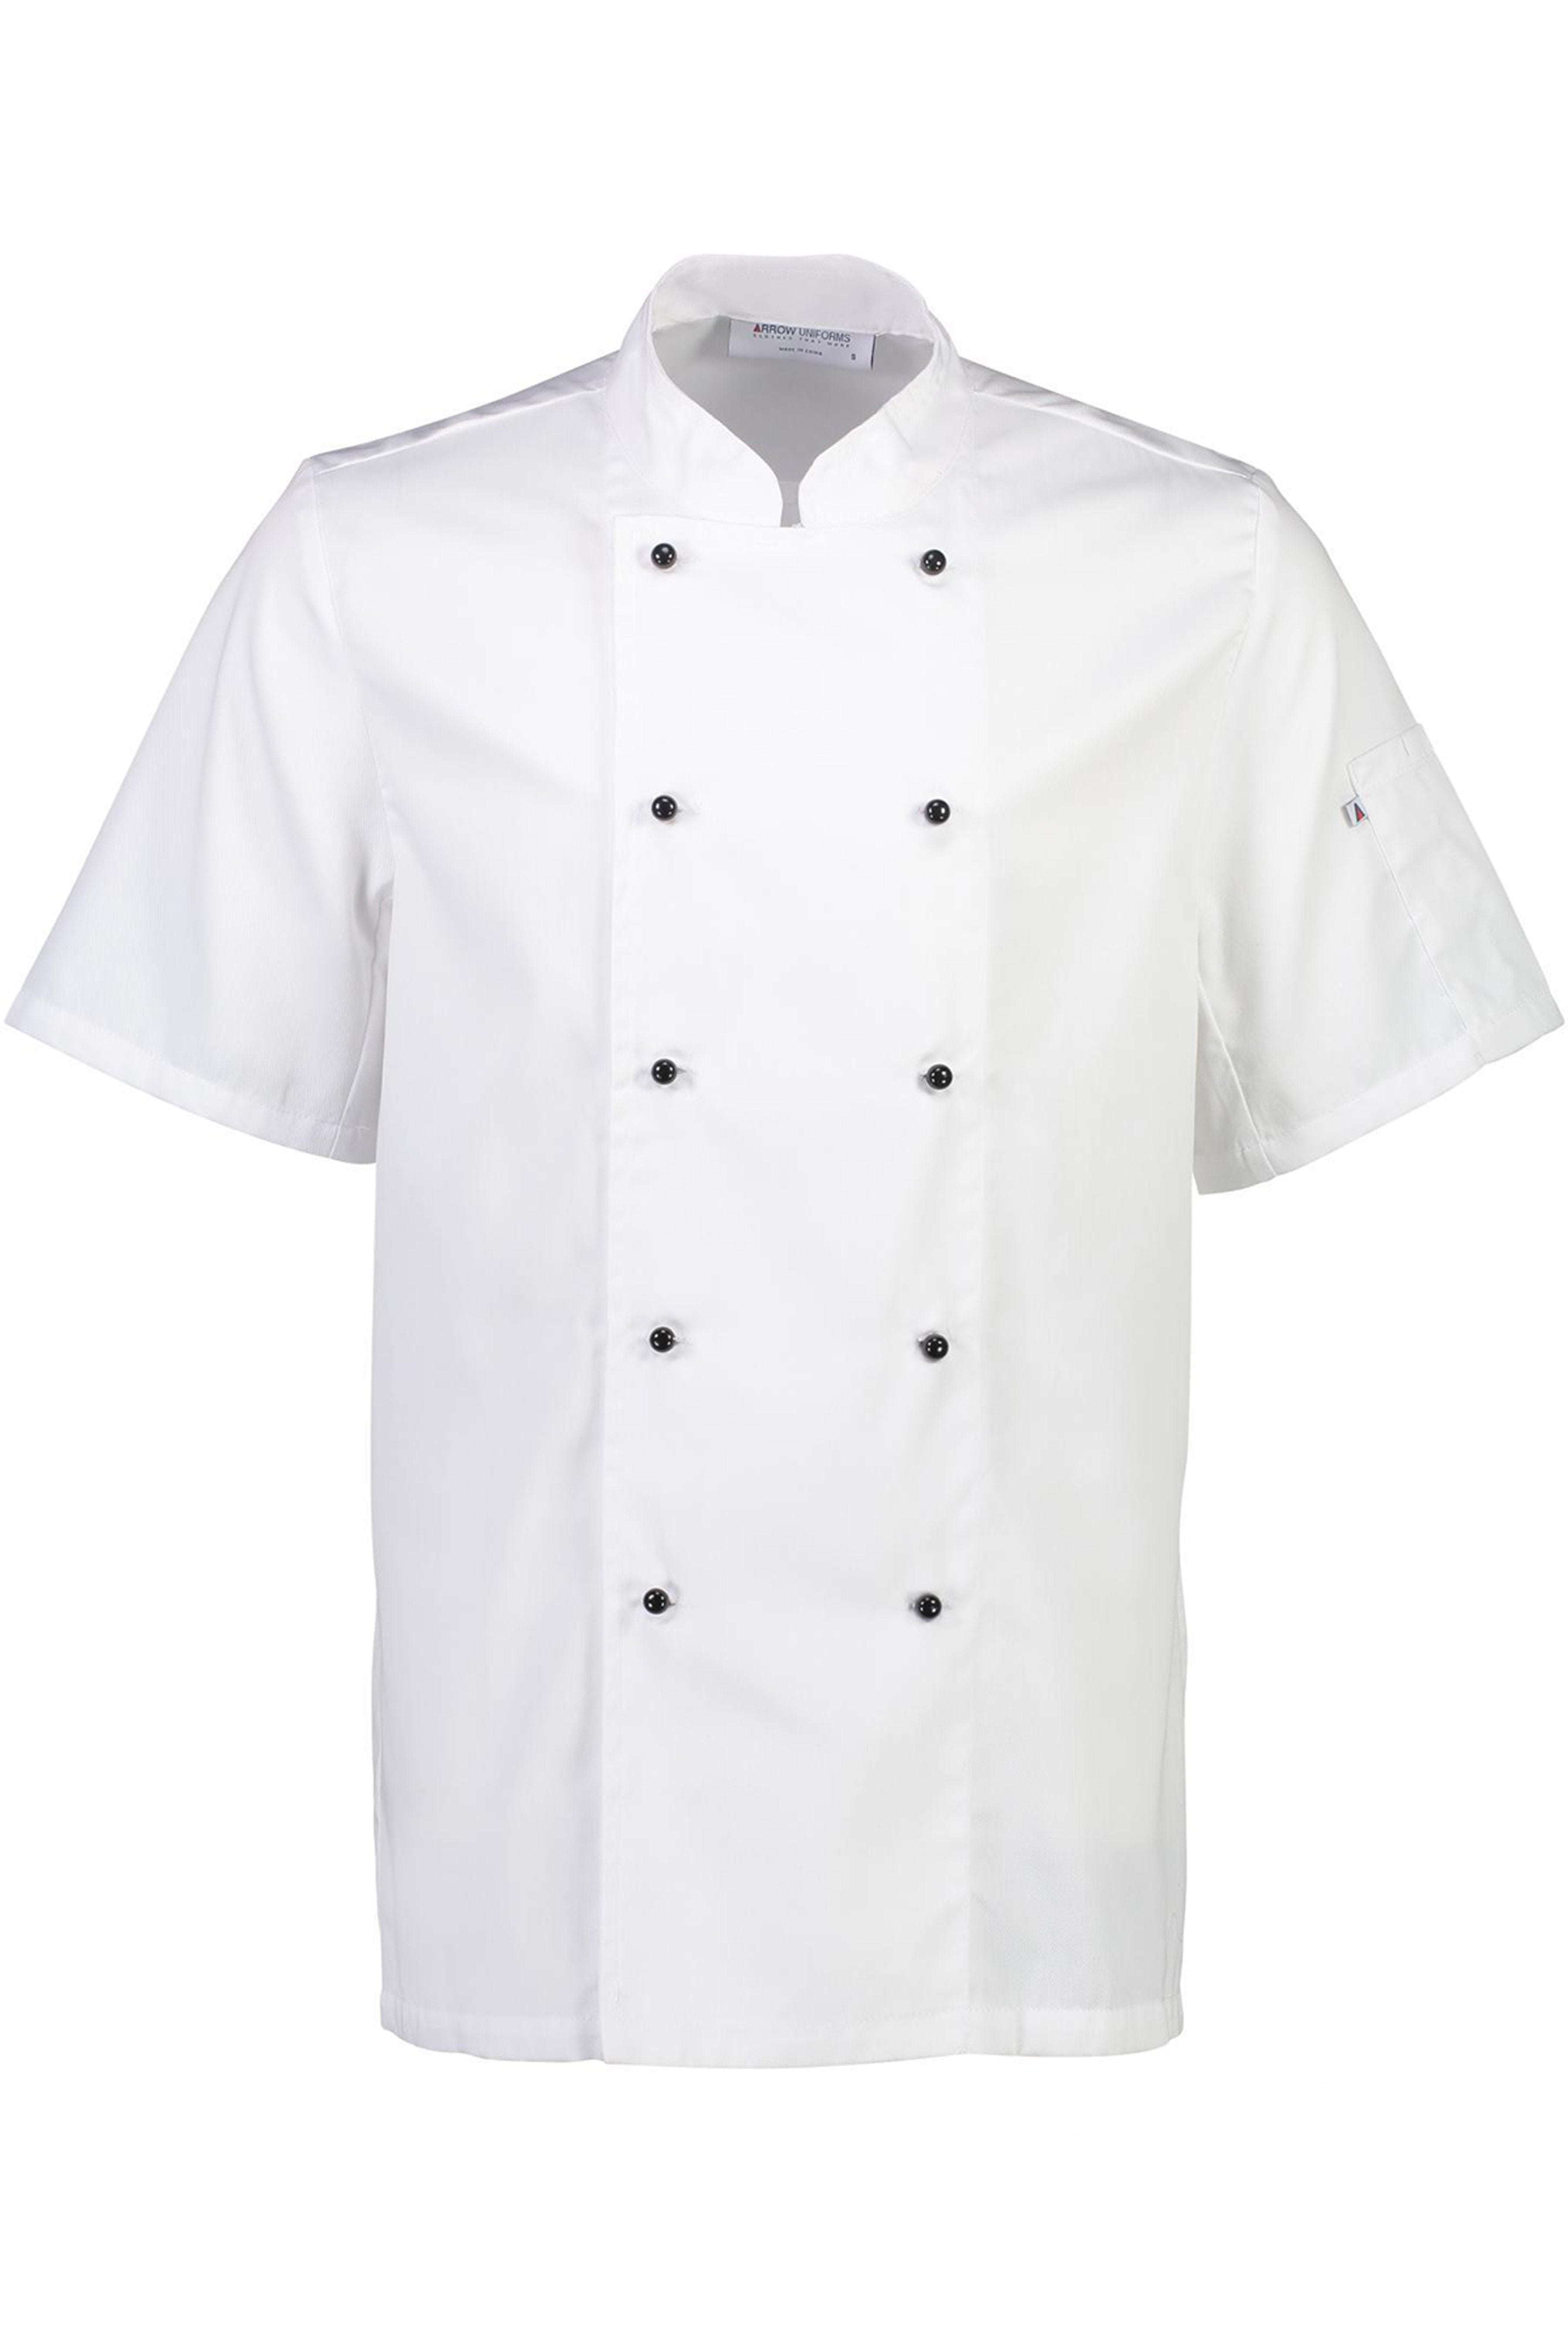 Club II Chefs Short Sleeve Jacket